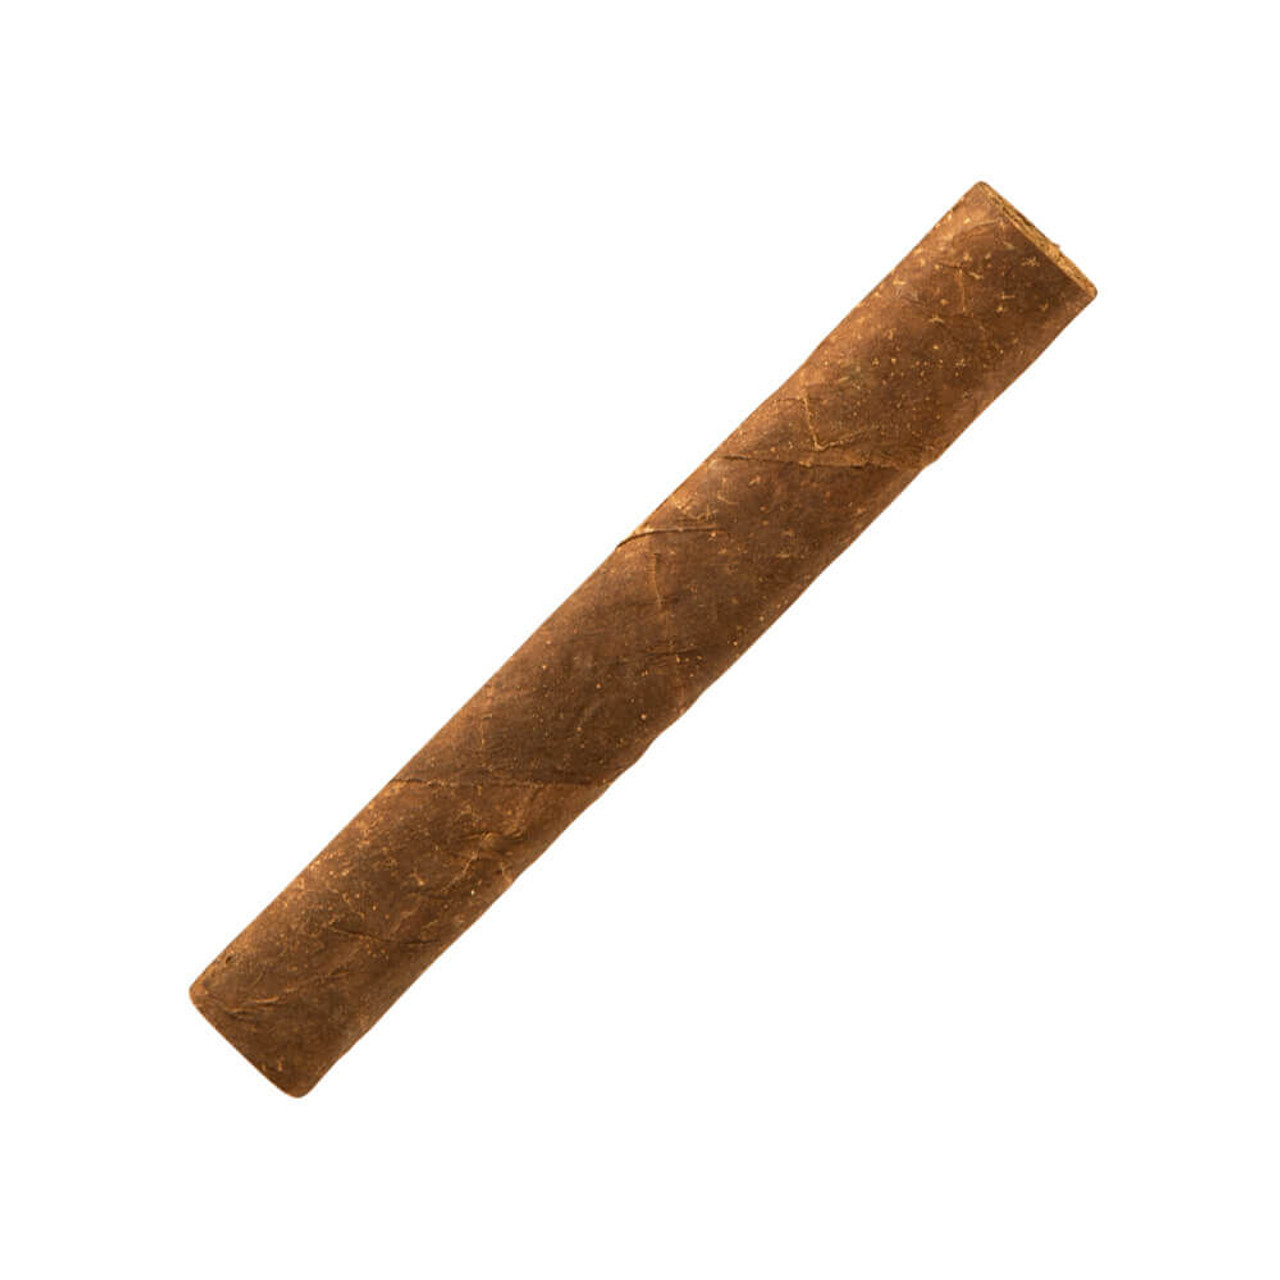 Villiger Export Maduro Cigars - 4 x 37 Single